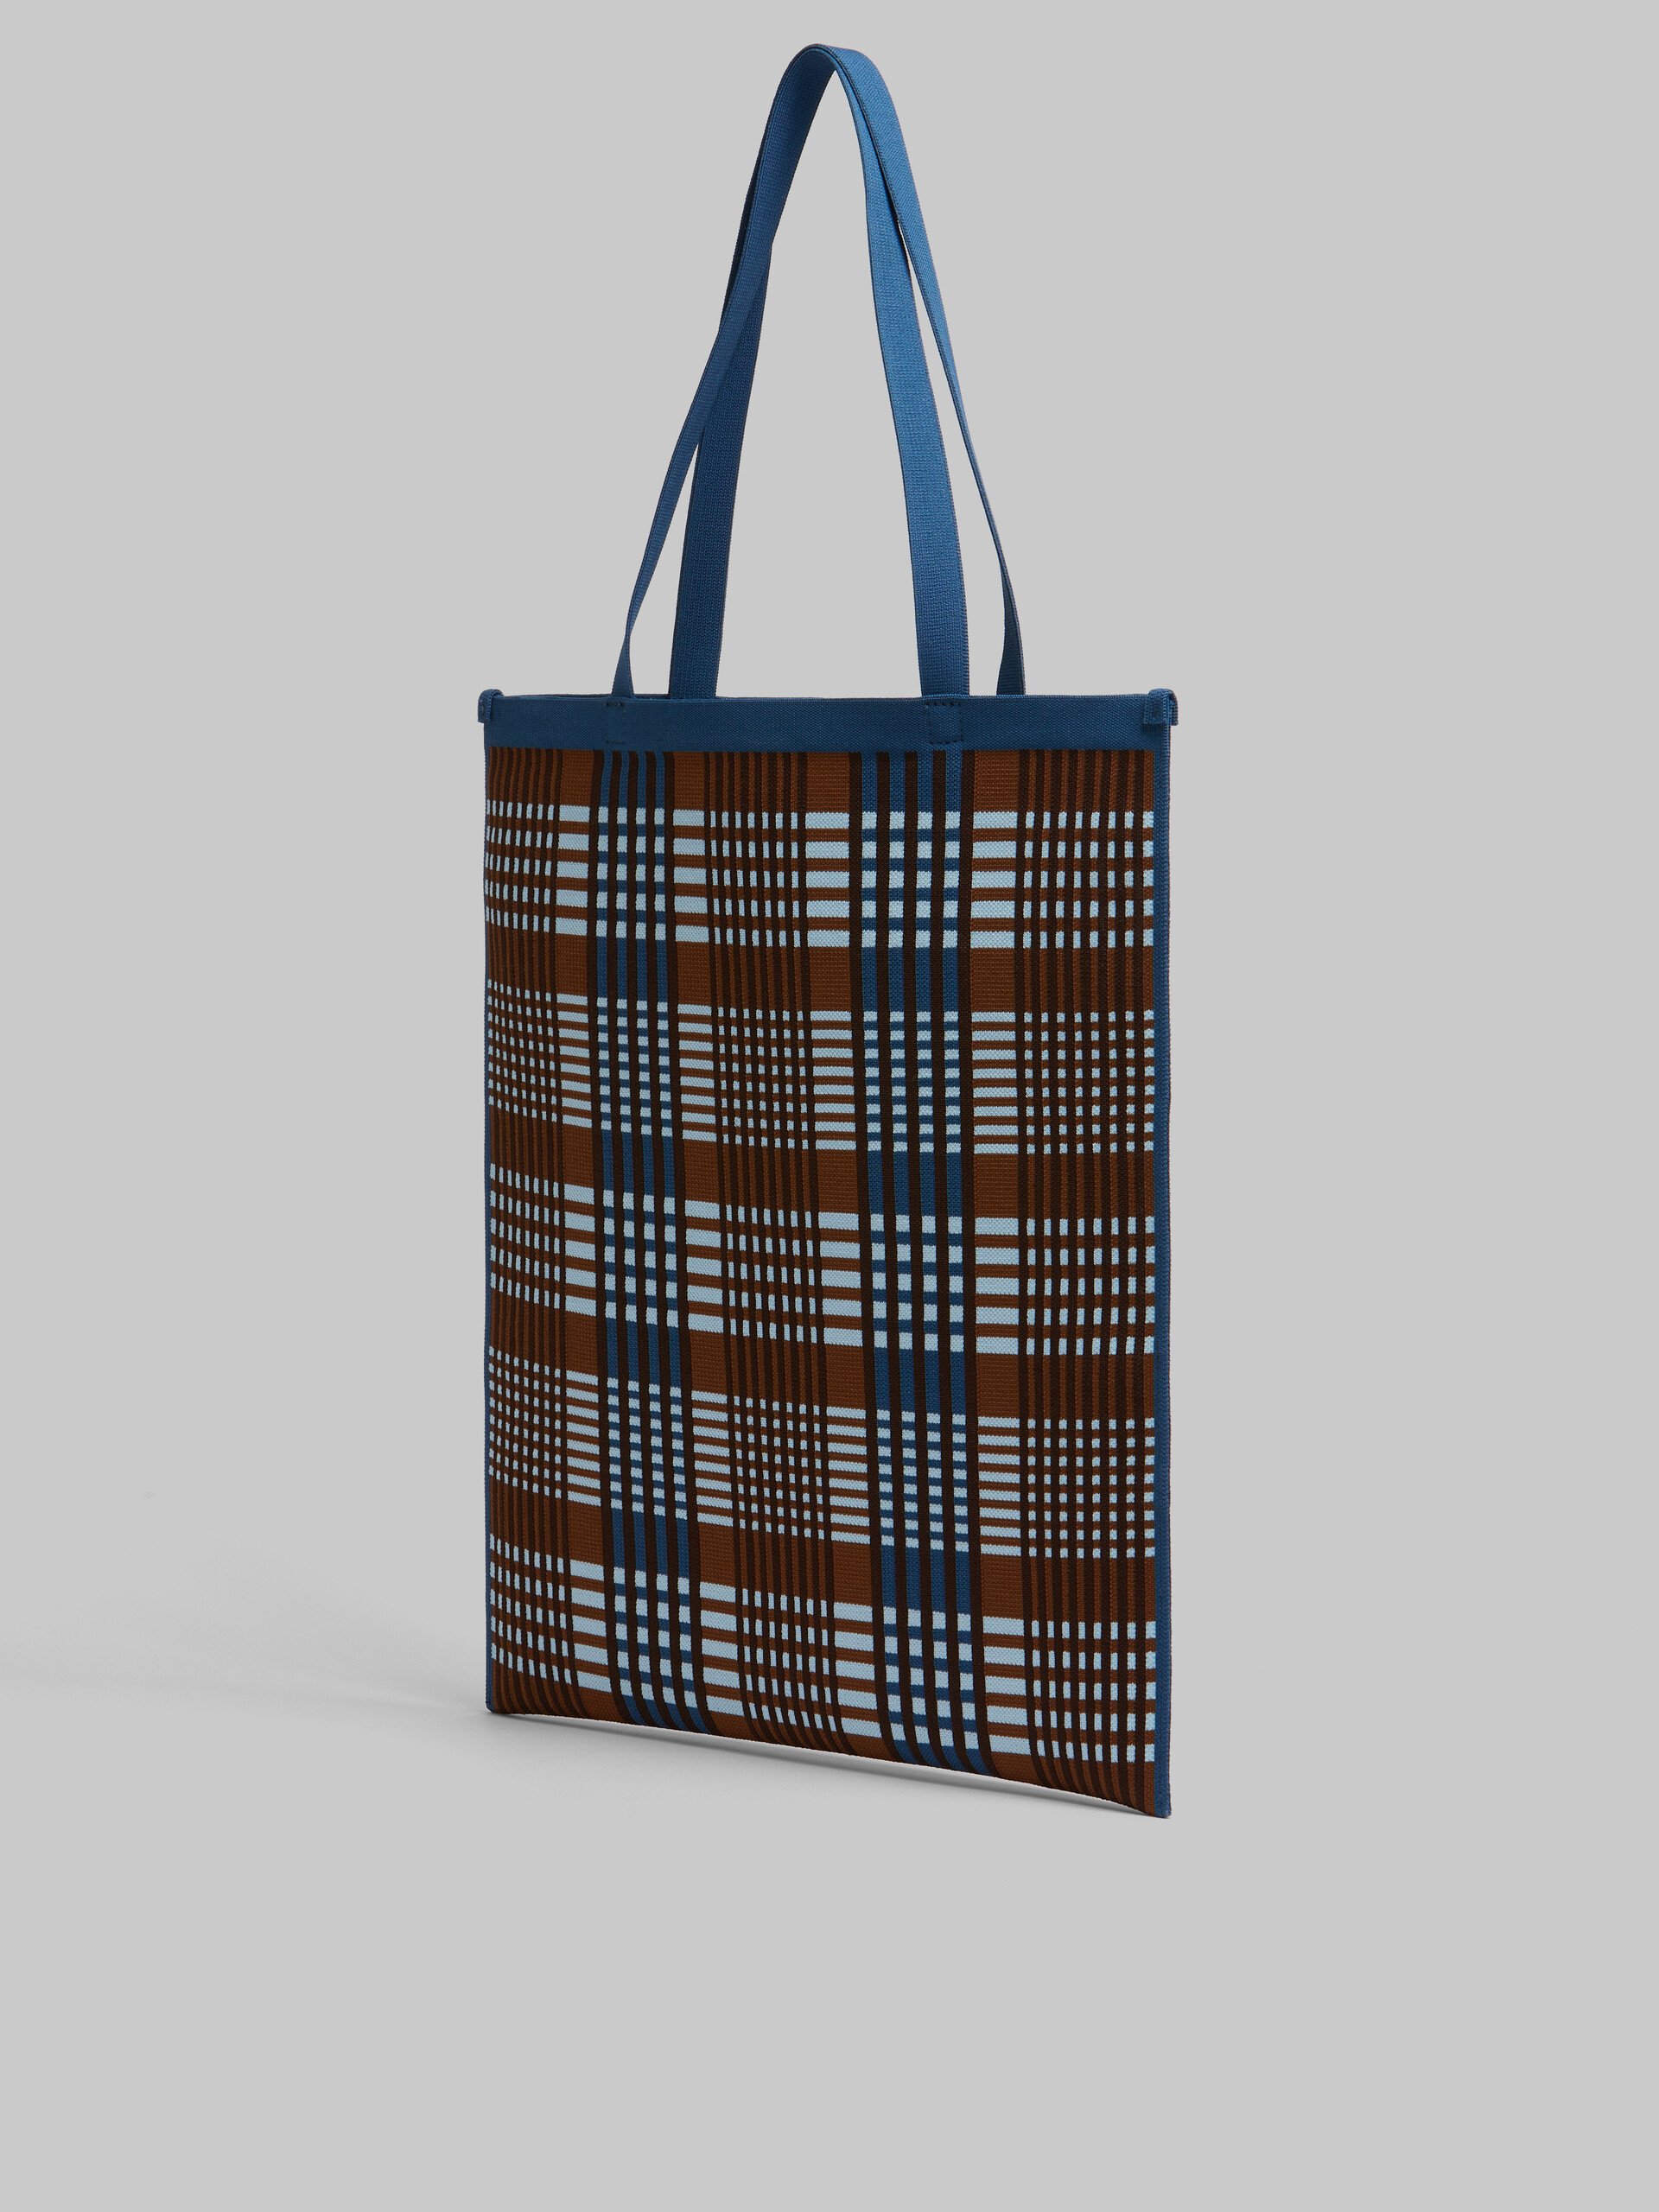 Blau-braun karierte, flache Tote Bag aus Jacquard - Shopper - Image 3